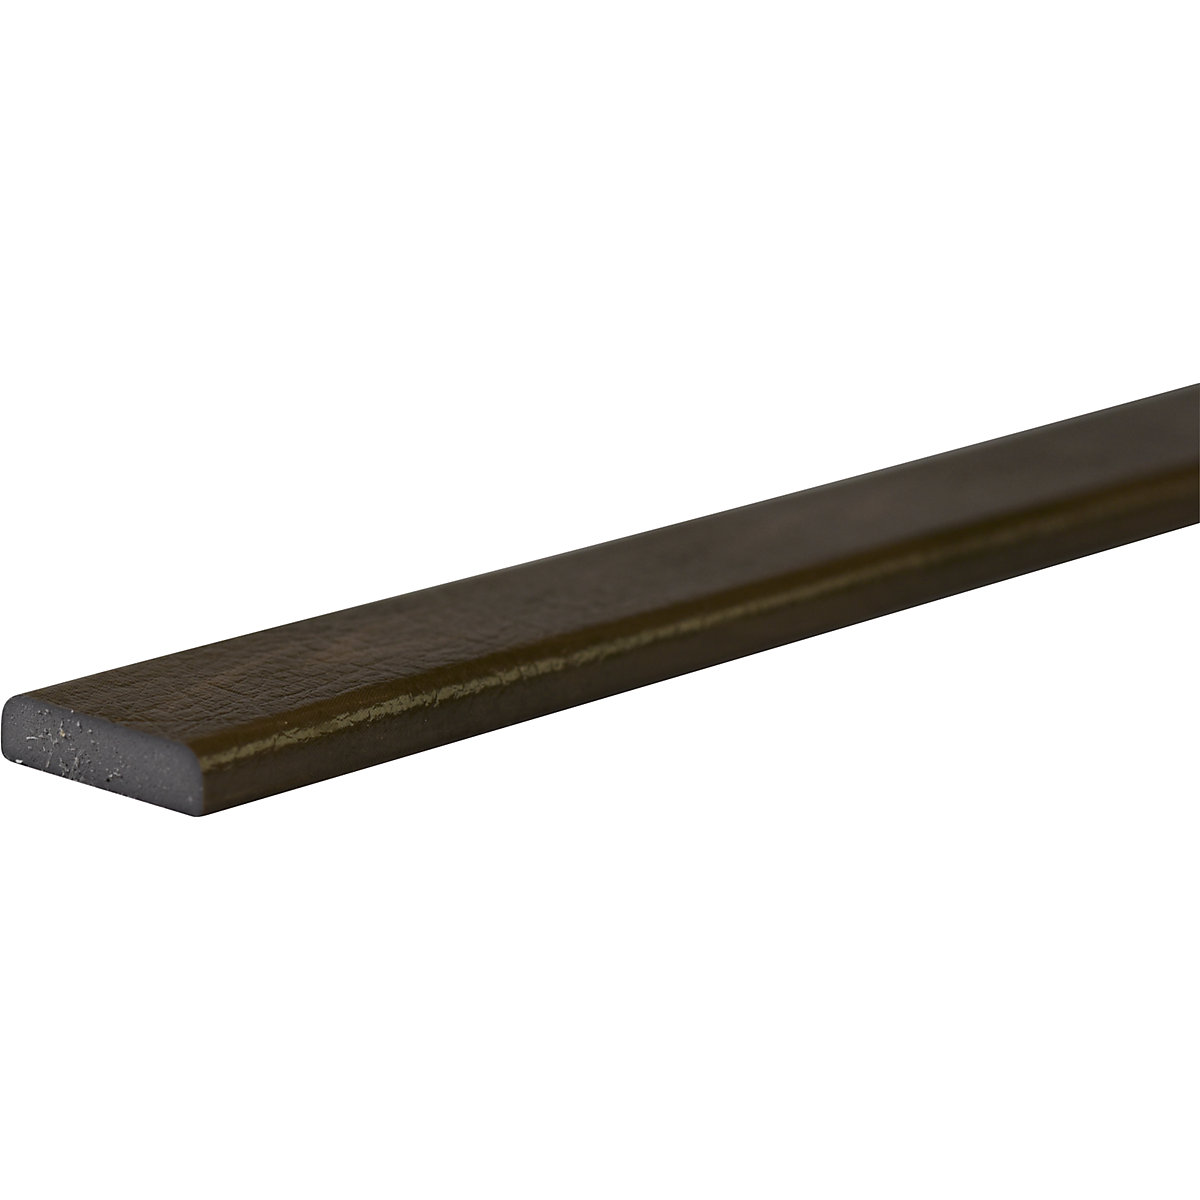 Protezione delle superfici Knuffi® – SHG, tipo F, pezzo da 1 m, simil-legno cachi-35